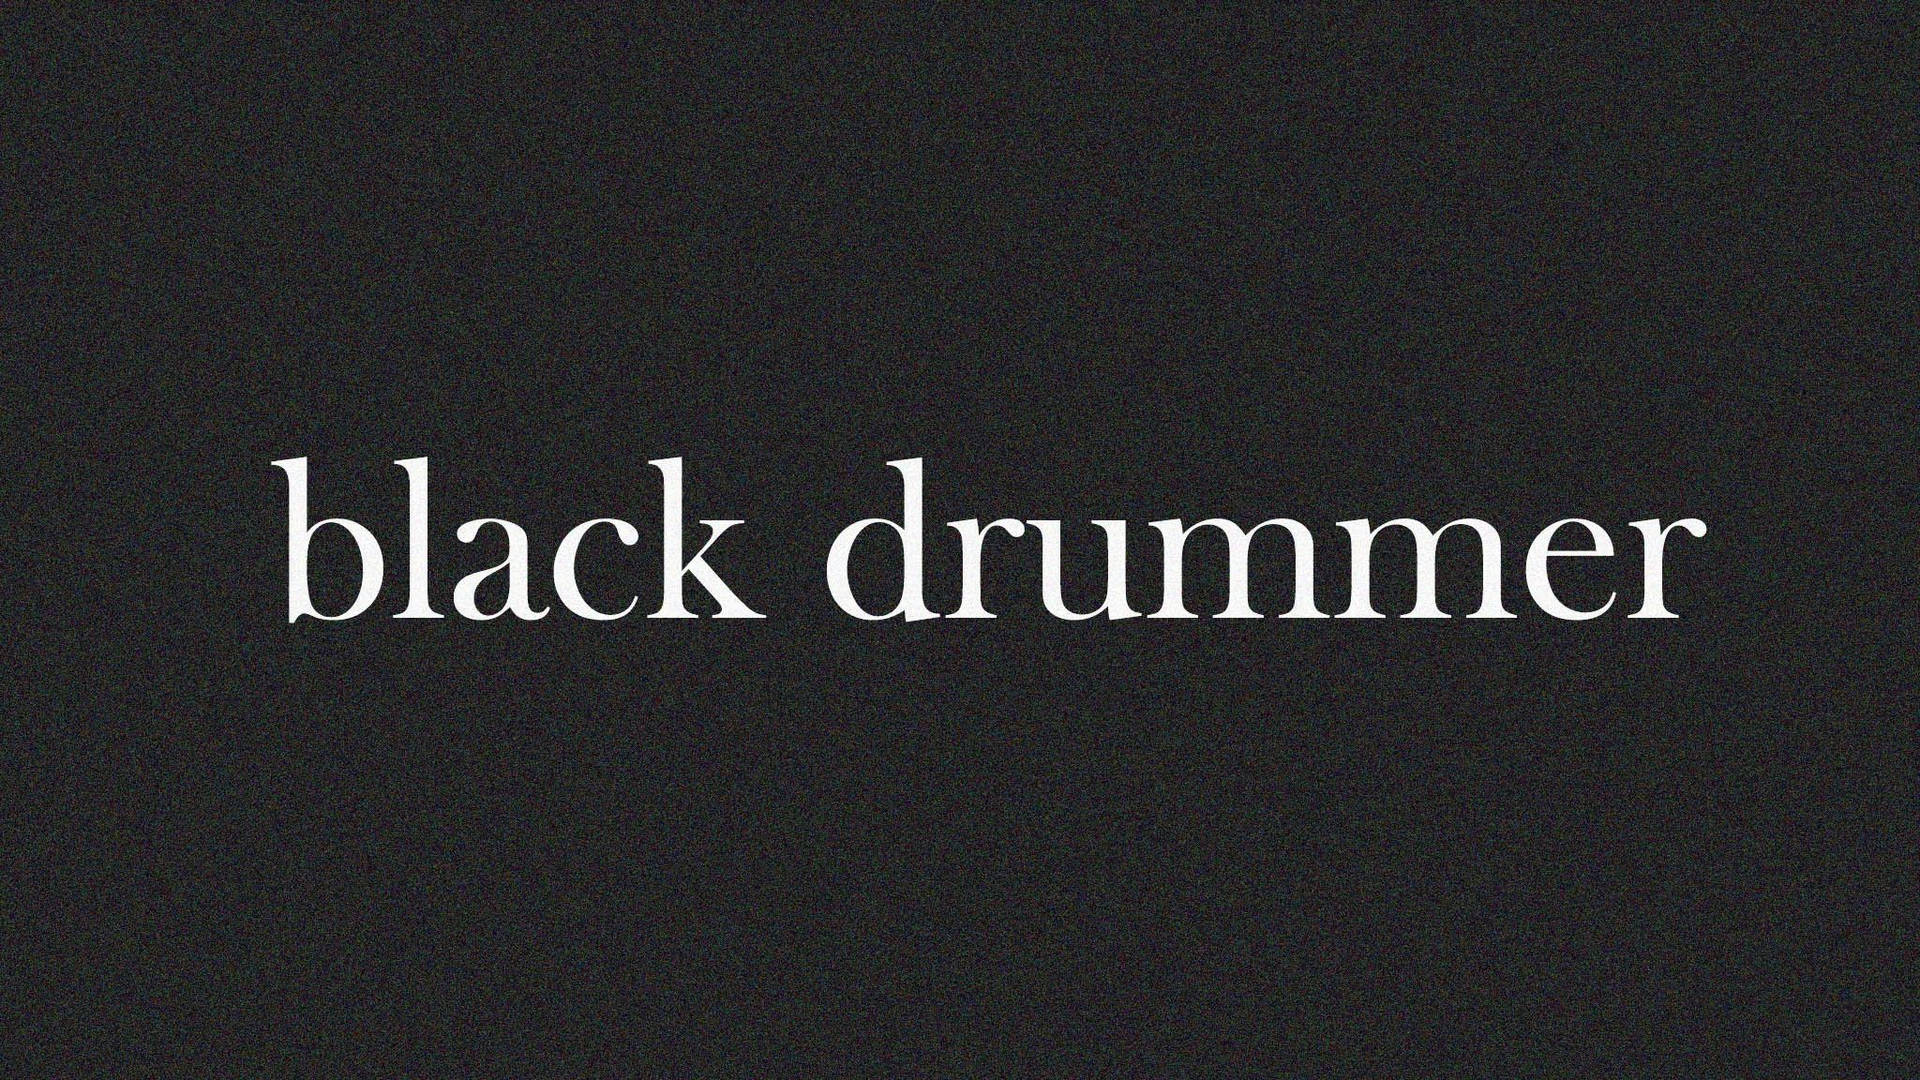 Black Drummer Macbook Pro Aesthetic Wallpaper